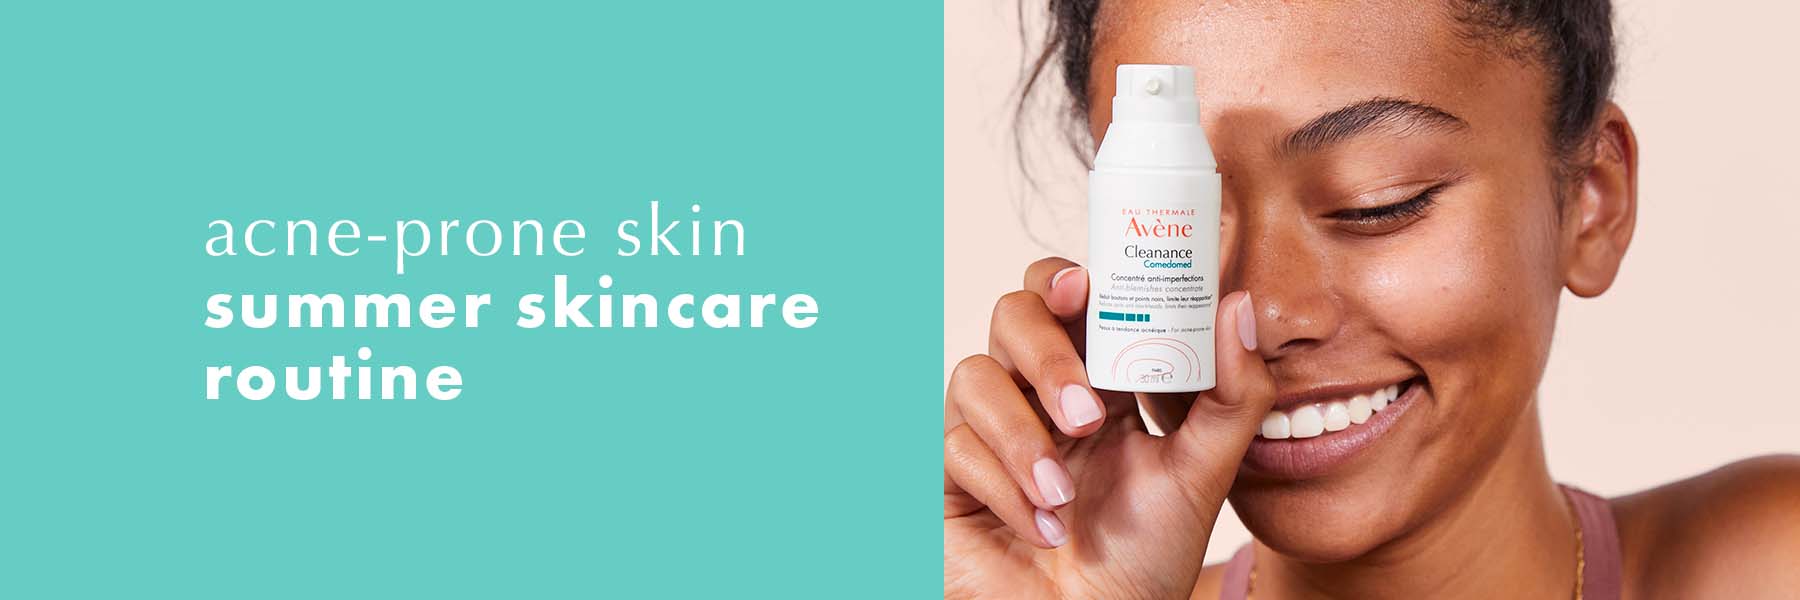 Acne-prone skin summer skincare routine